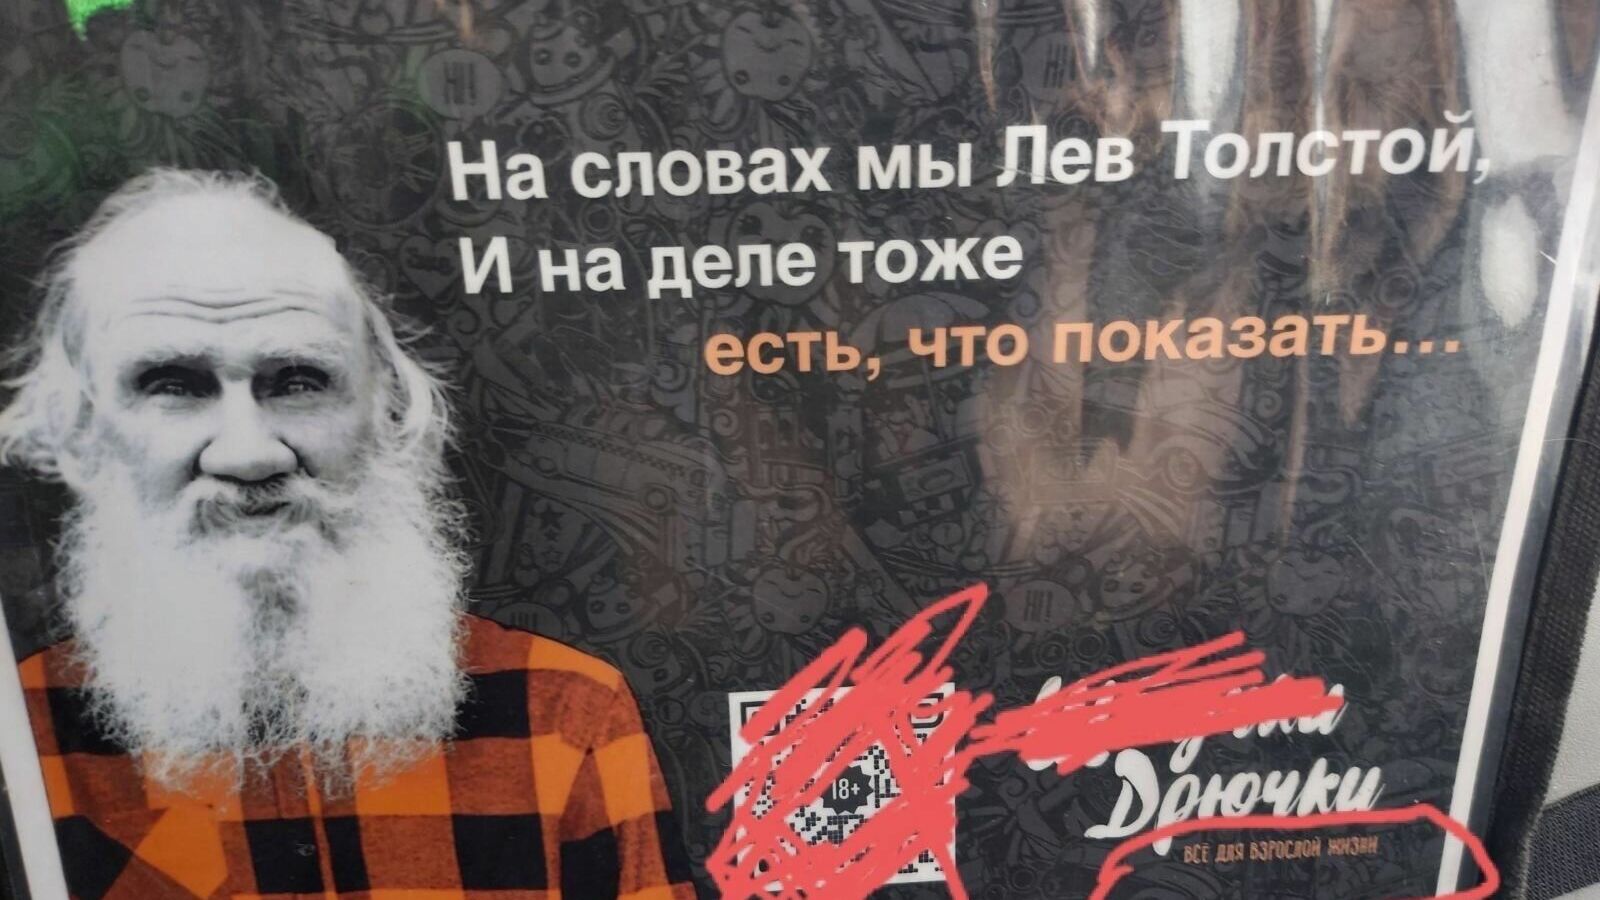 В Тюмени в автобусах рекламируют секс-шоп с изображением писателя Льва Толстого